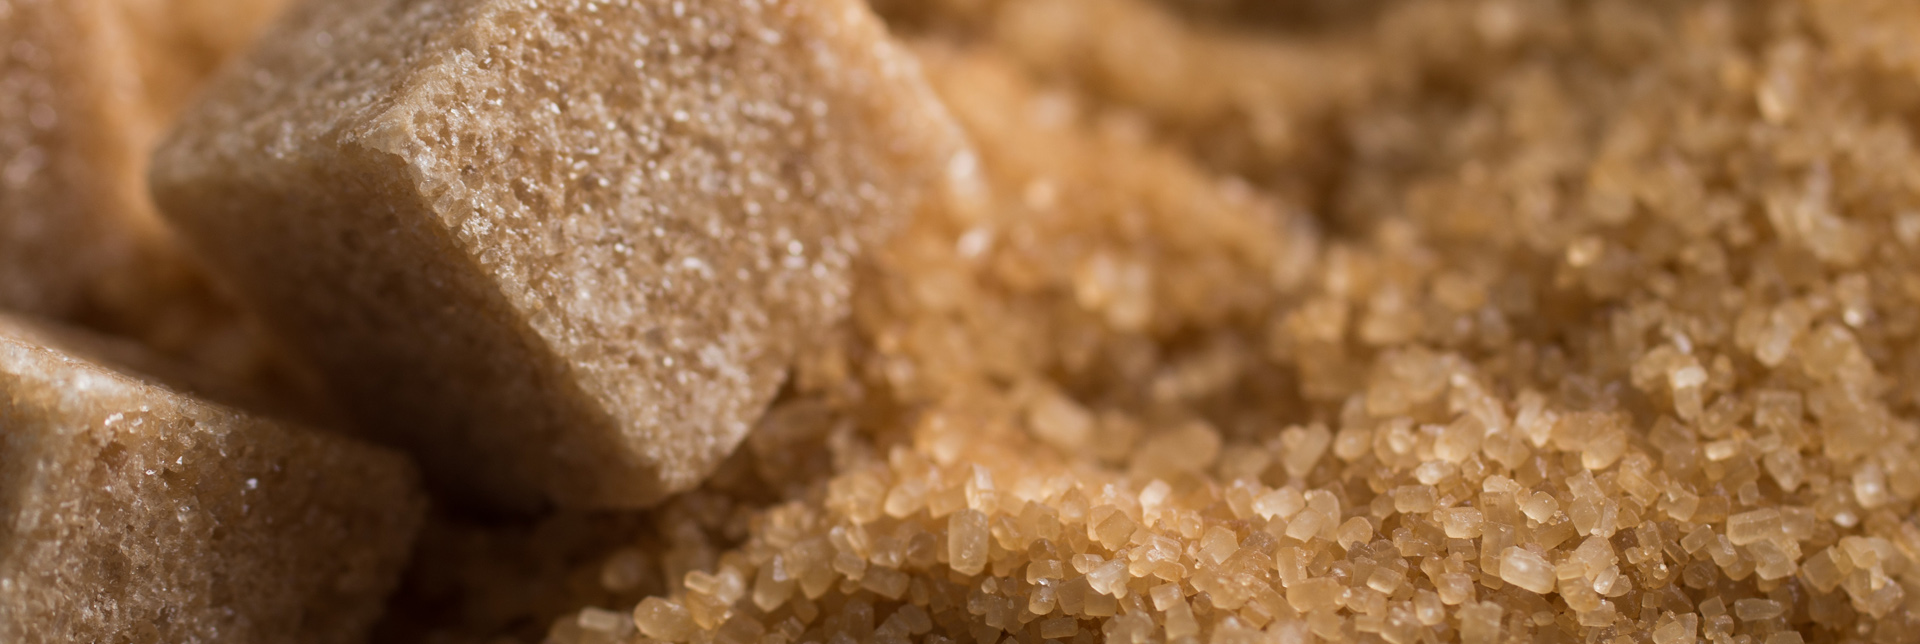 Wie wird eigentlich Zucker hergestellt?